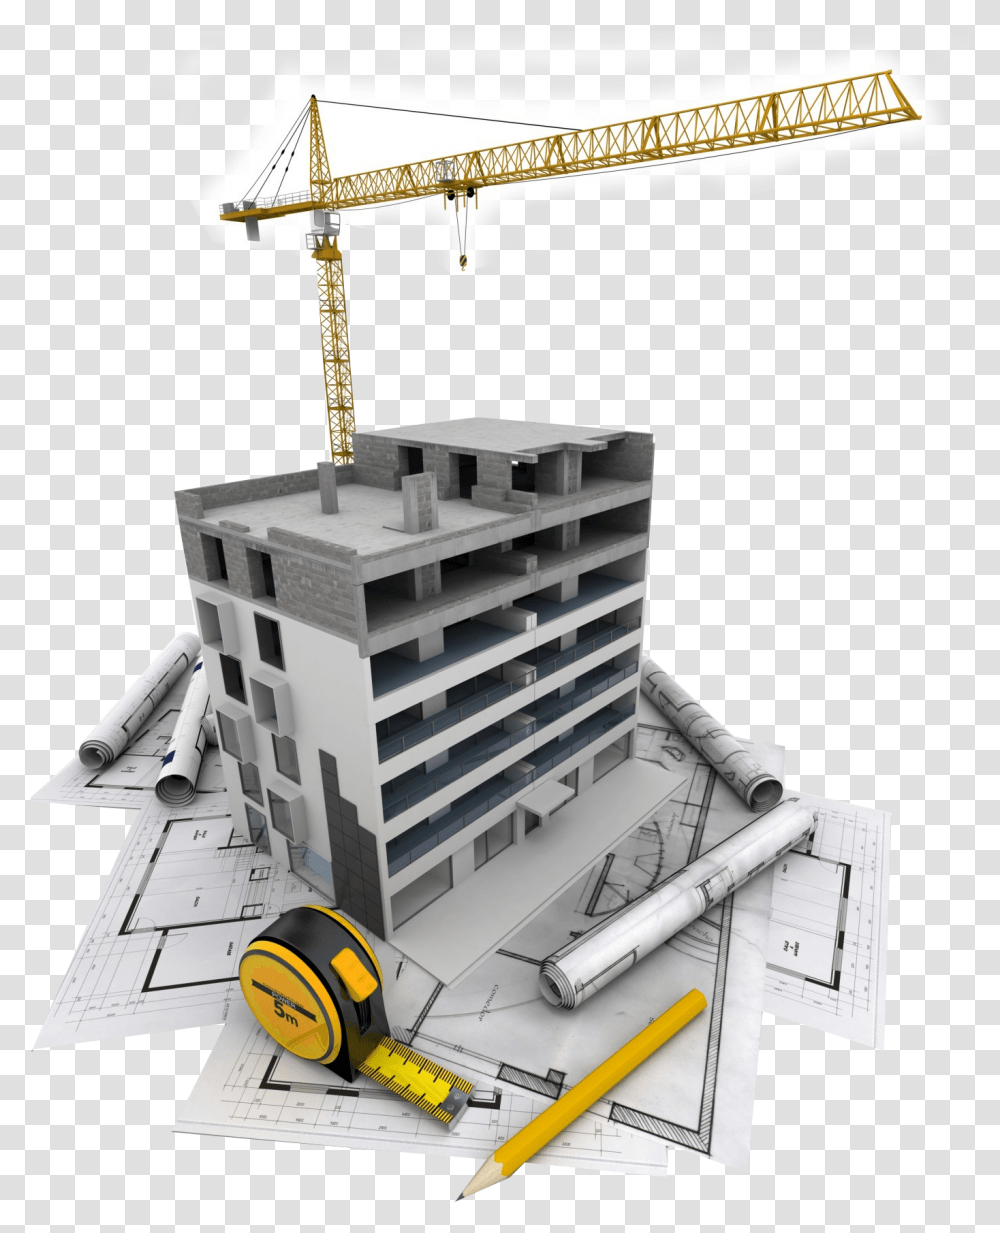 Construction Building Hd, Construction Crane, Architecture, Urban, Nature Transparent Png